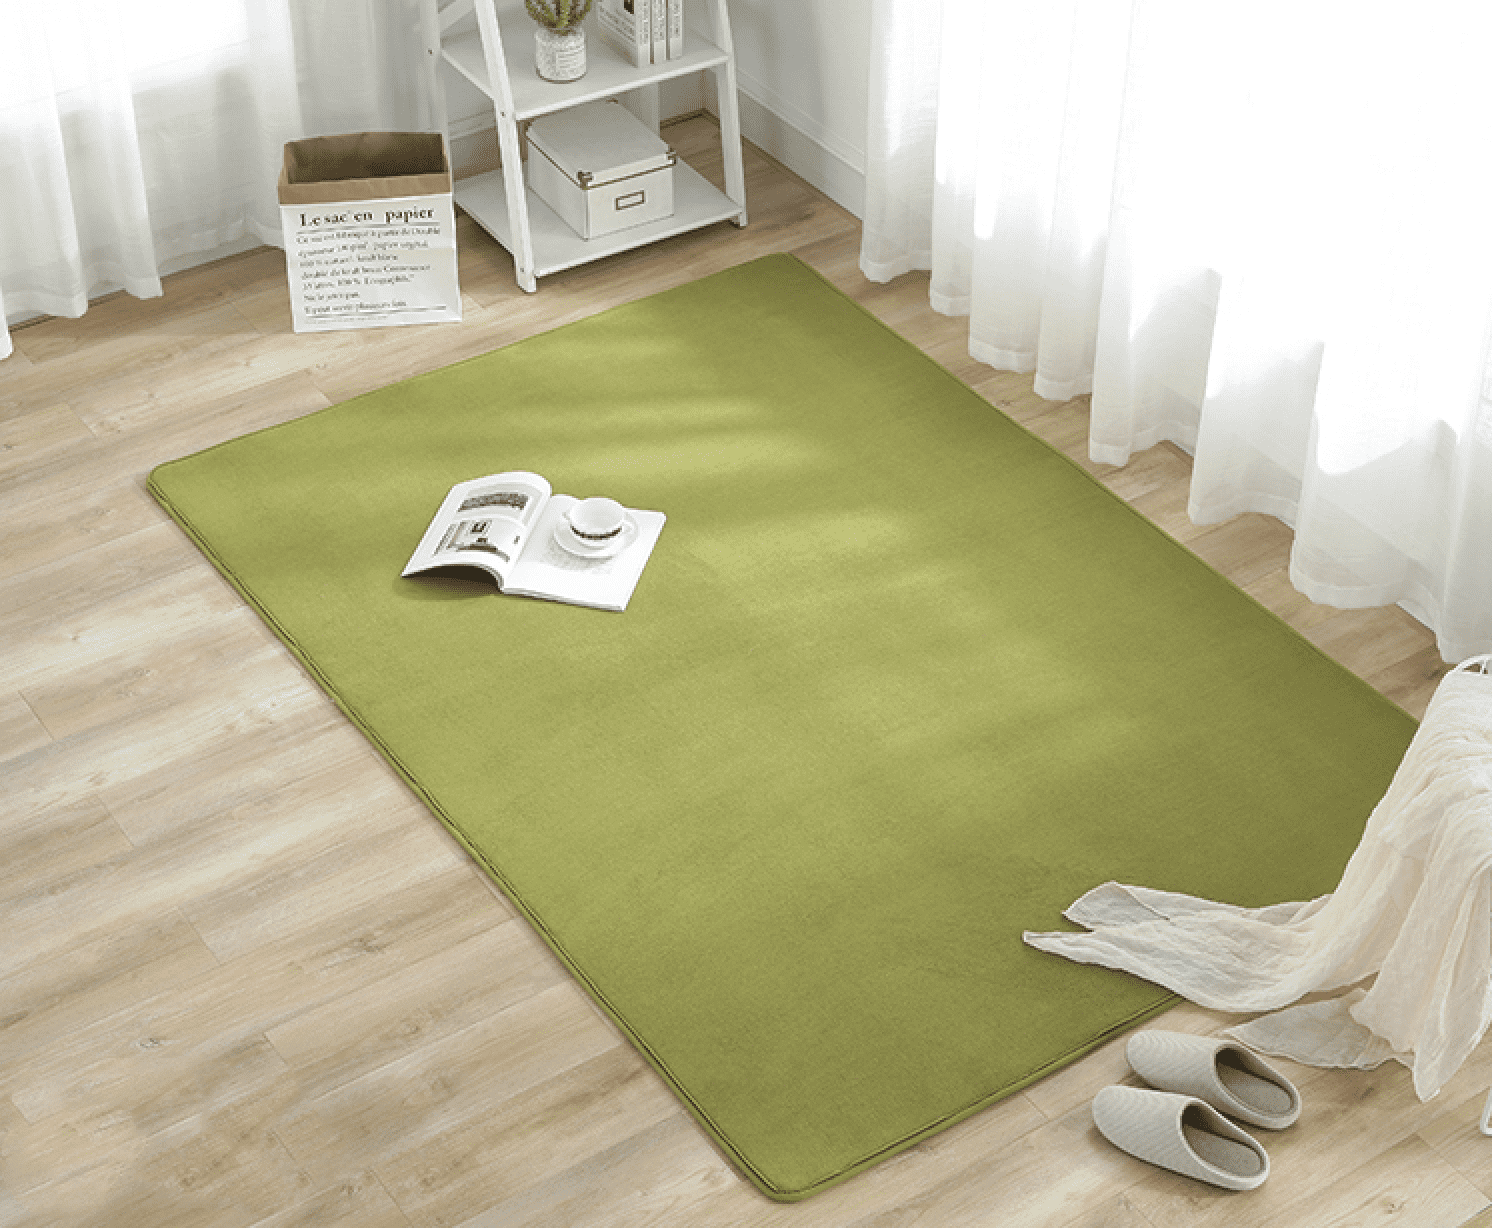 Chọn mua thảm trải sàn dạng cuộn hay dạng tấm sáng suốt hơn?